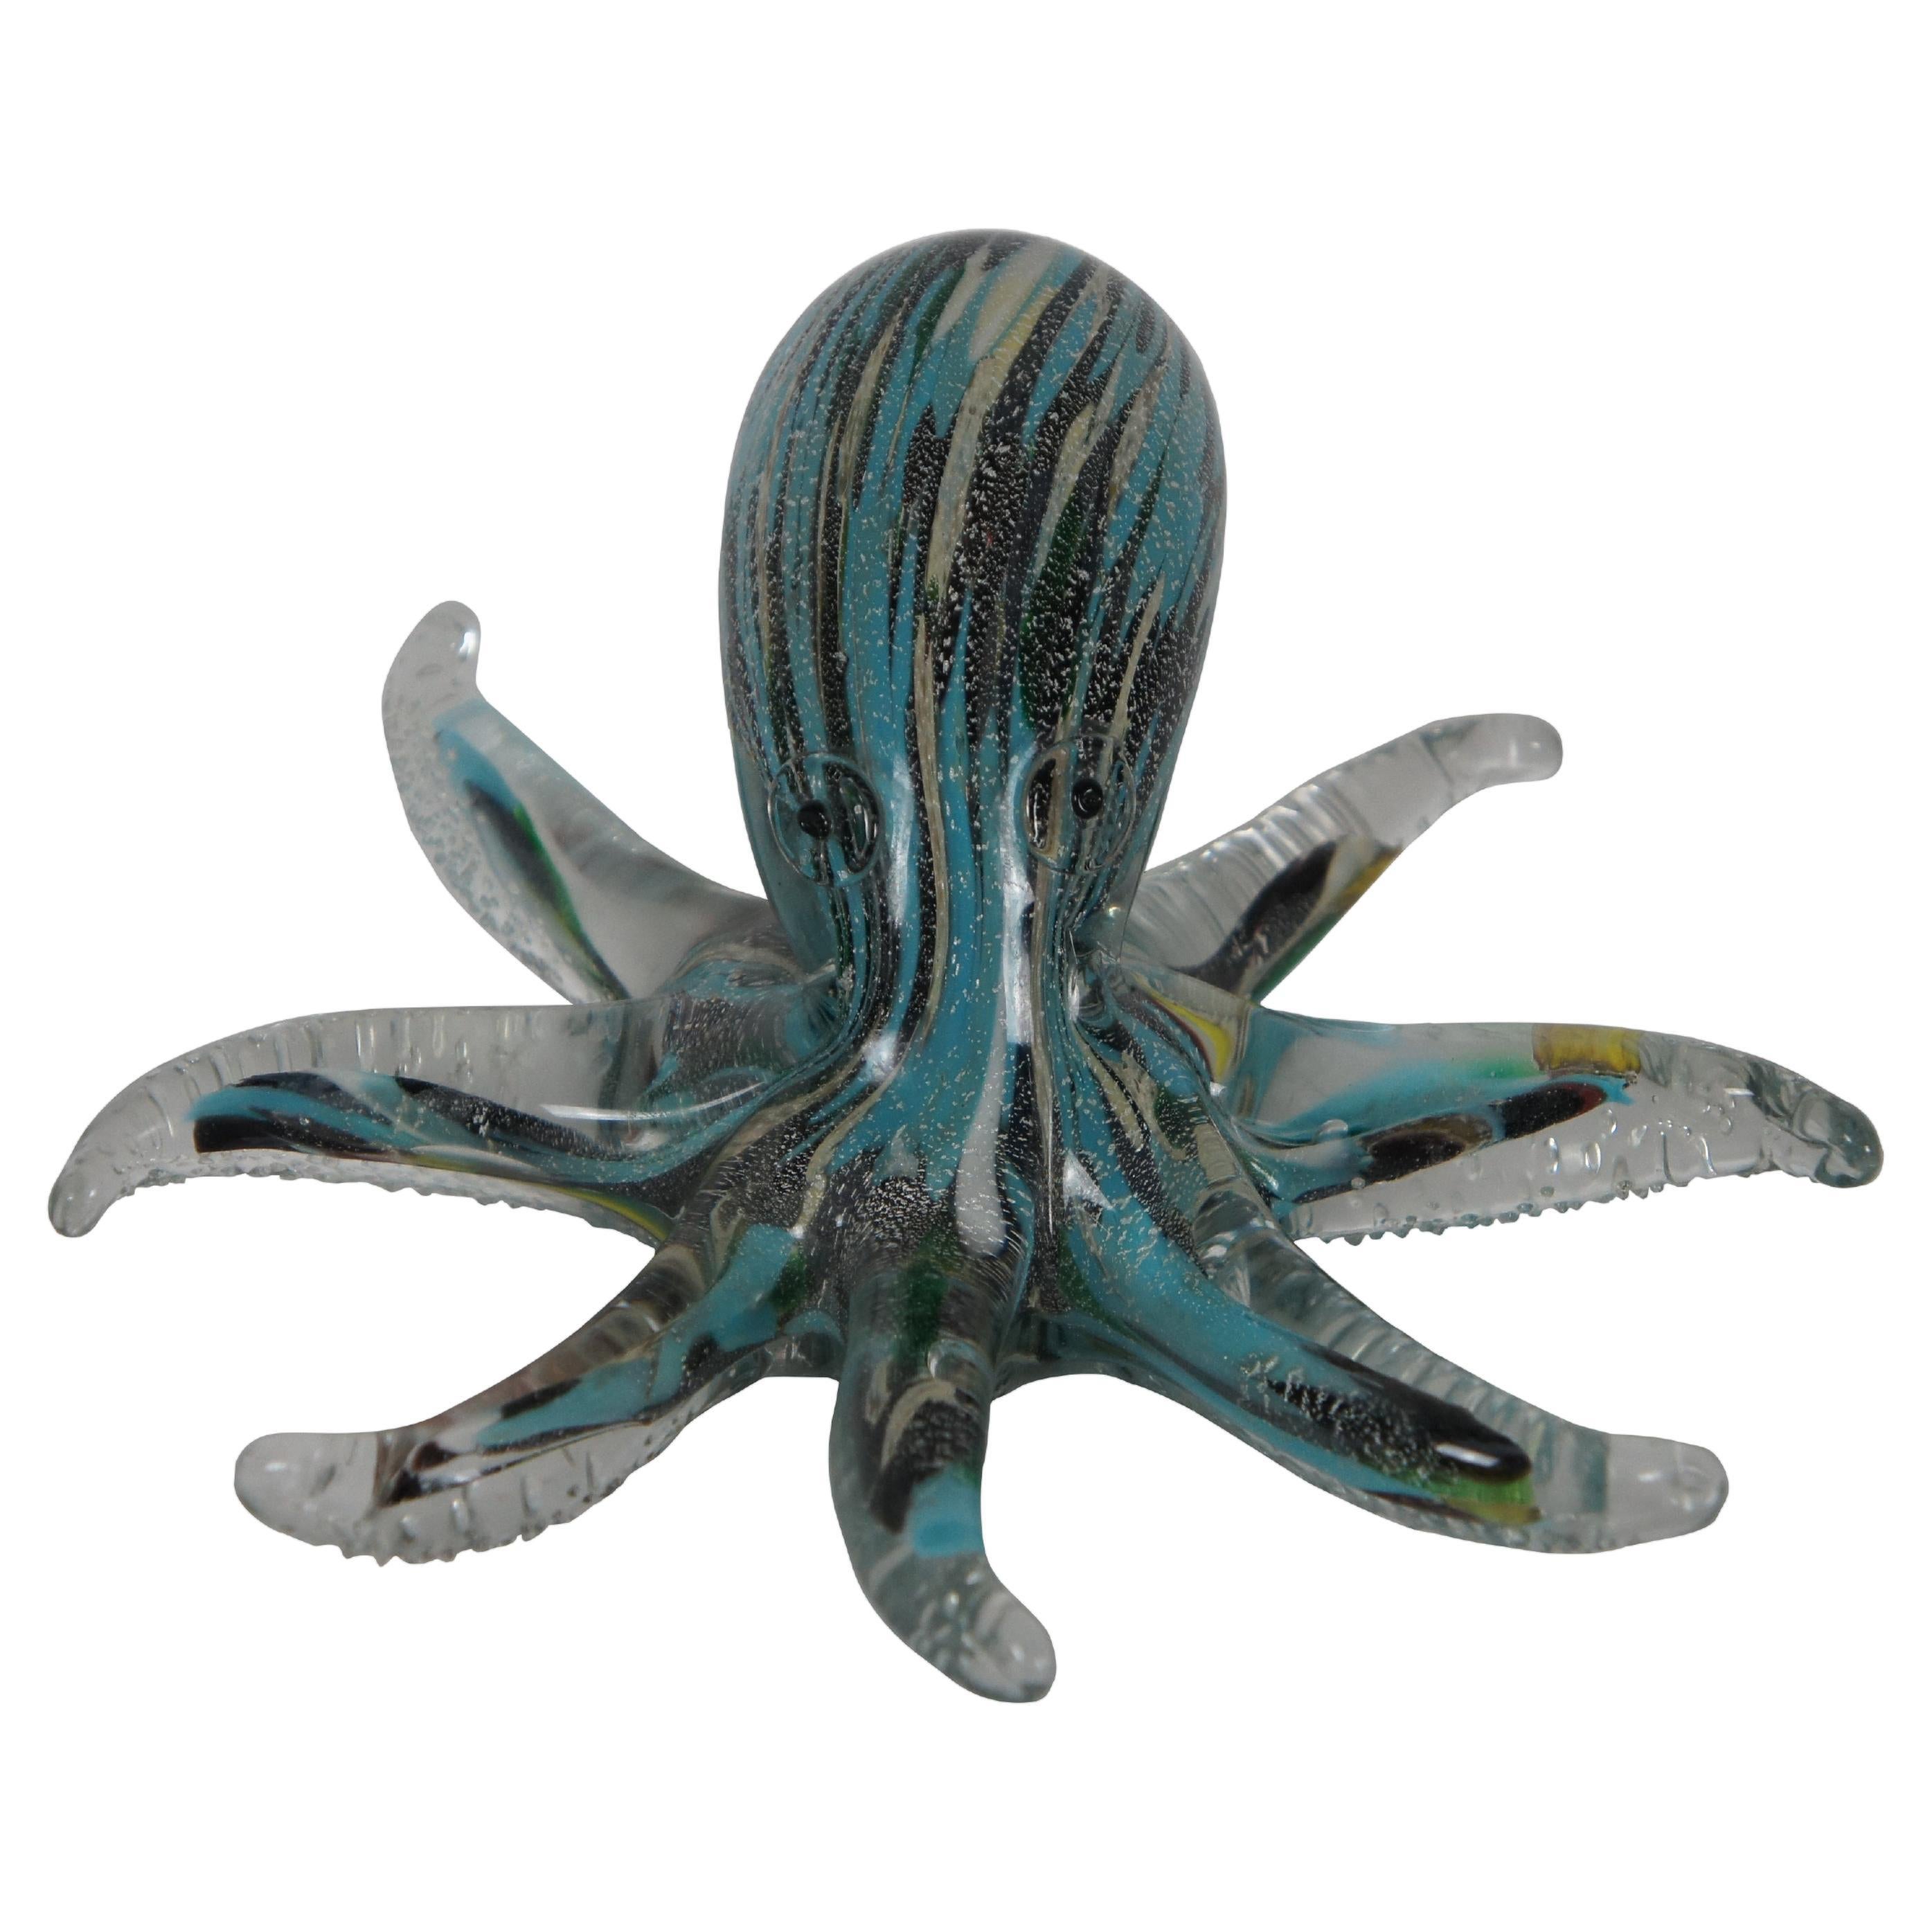 Archimede Seguso for Murano Handblown Art Glass Octopus Paperweight Sculpture 